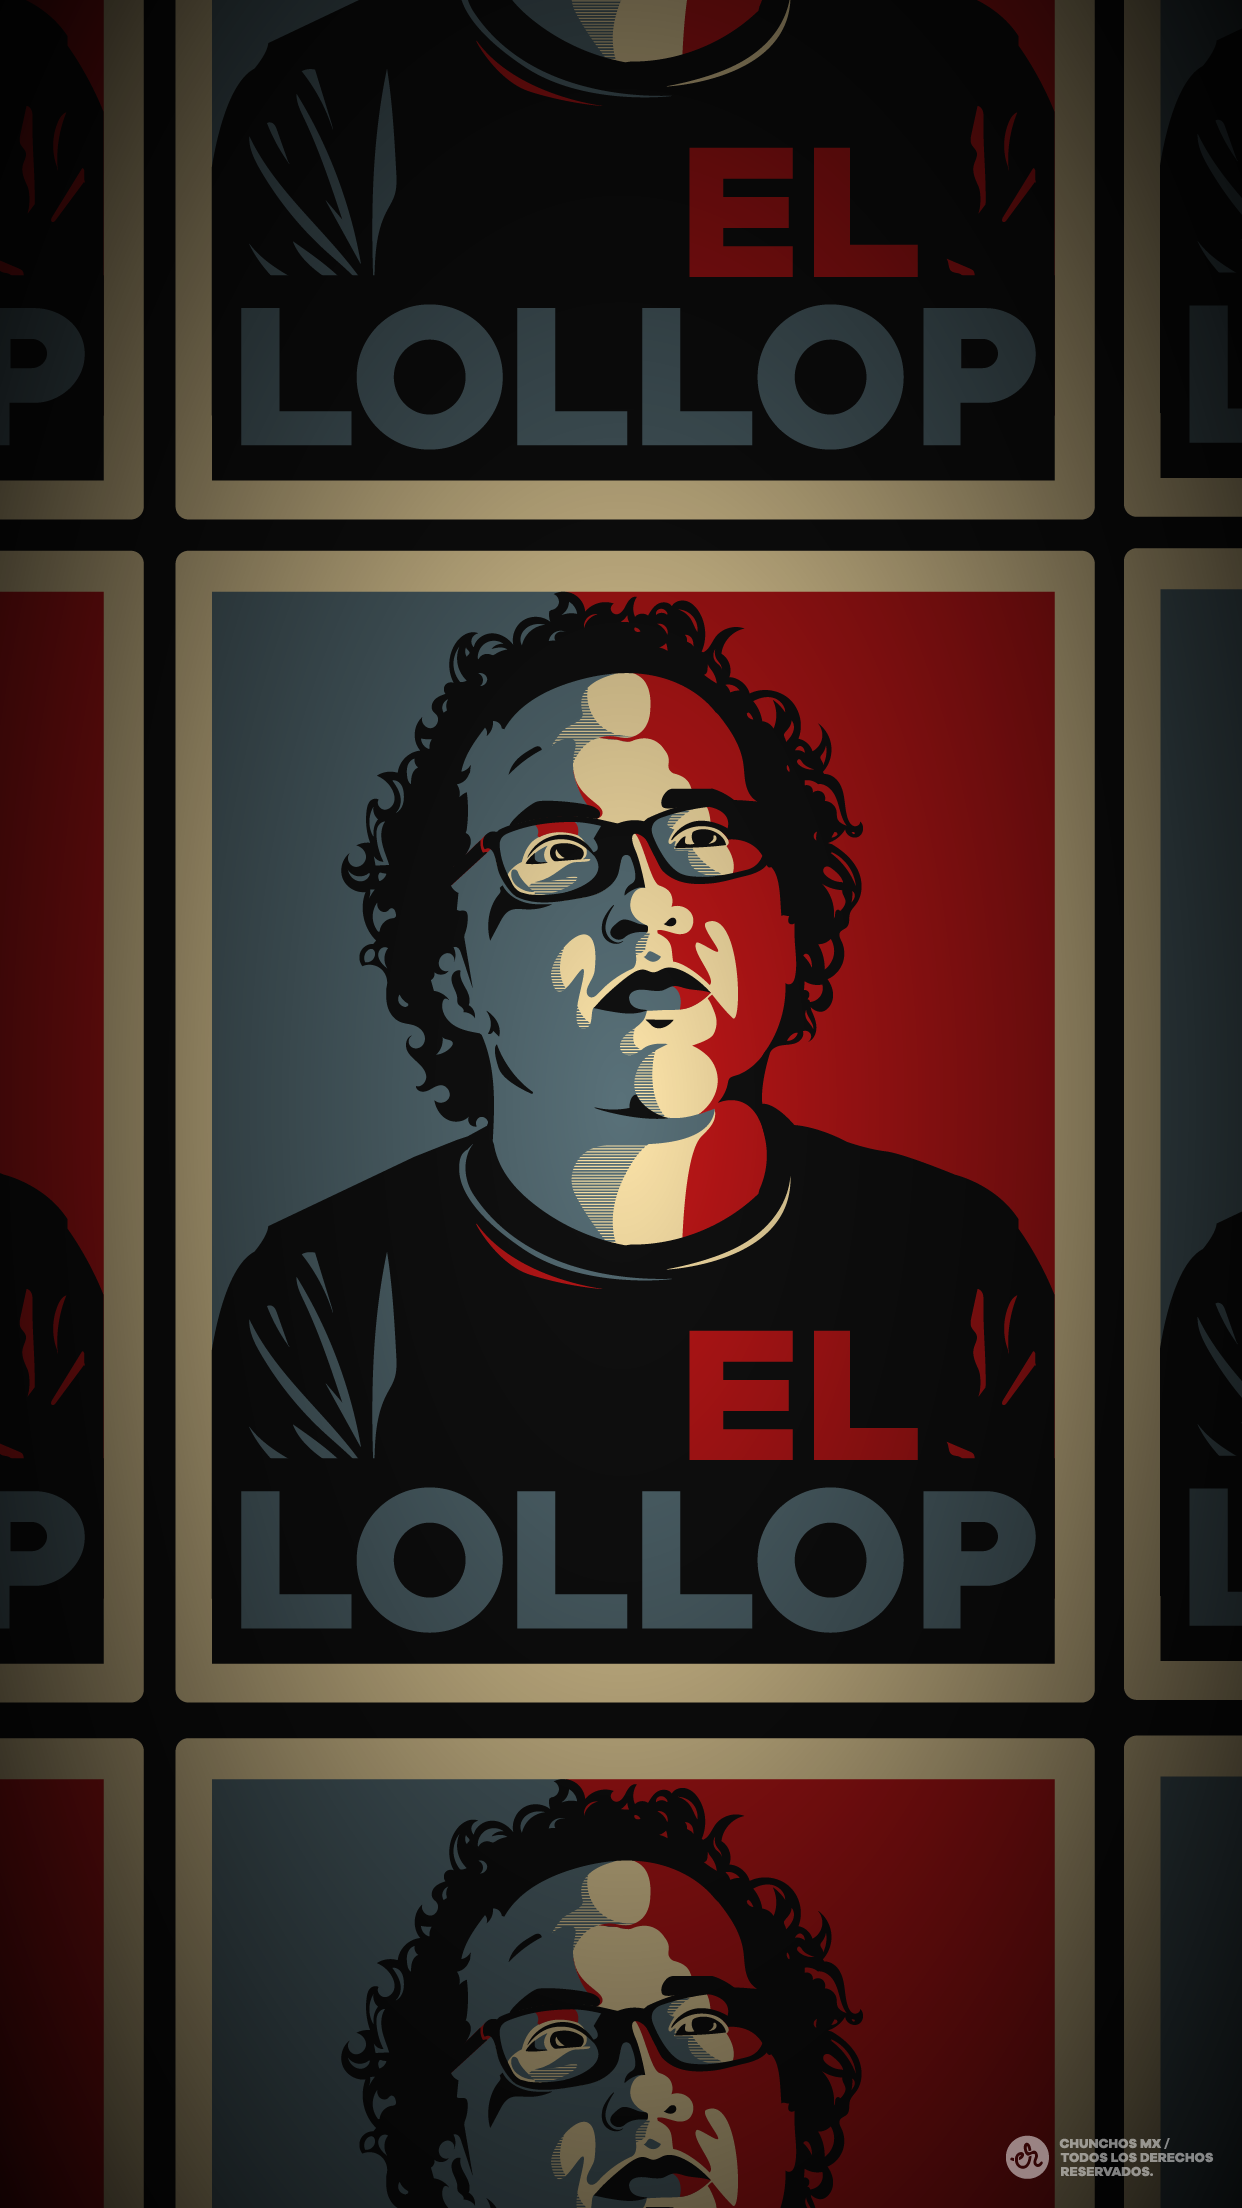 Wallpaper Inspirado en El Dollop - El Lollop